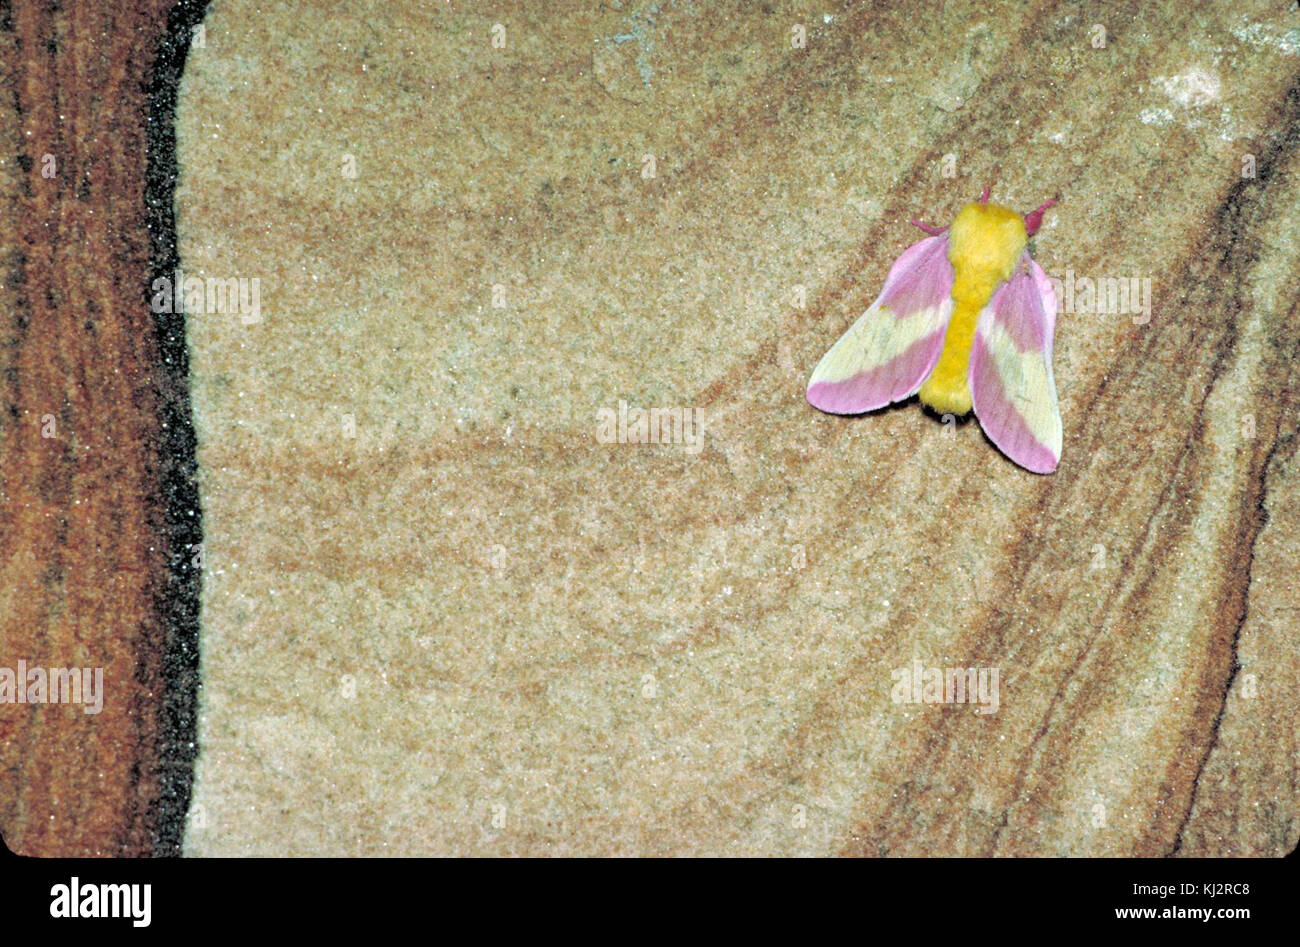 L Erable Dryocampa Rubicunda Papillon Rose Avec Un Corps Jaune Et Rose Et Jaune Ailes Photo Stock Alamy